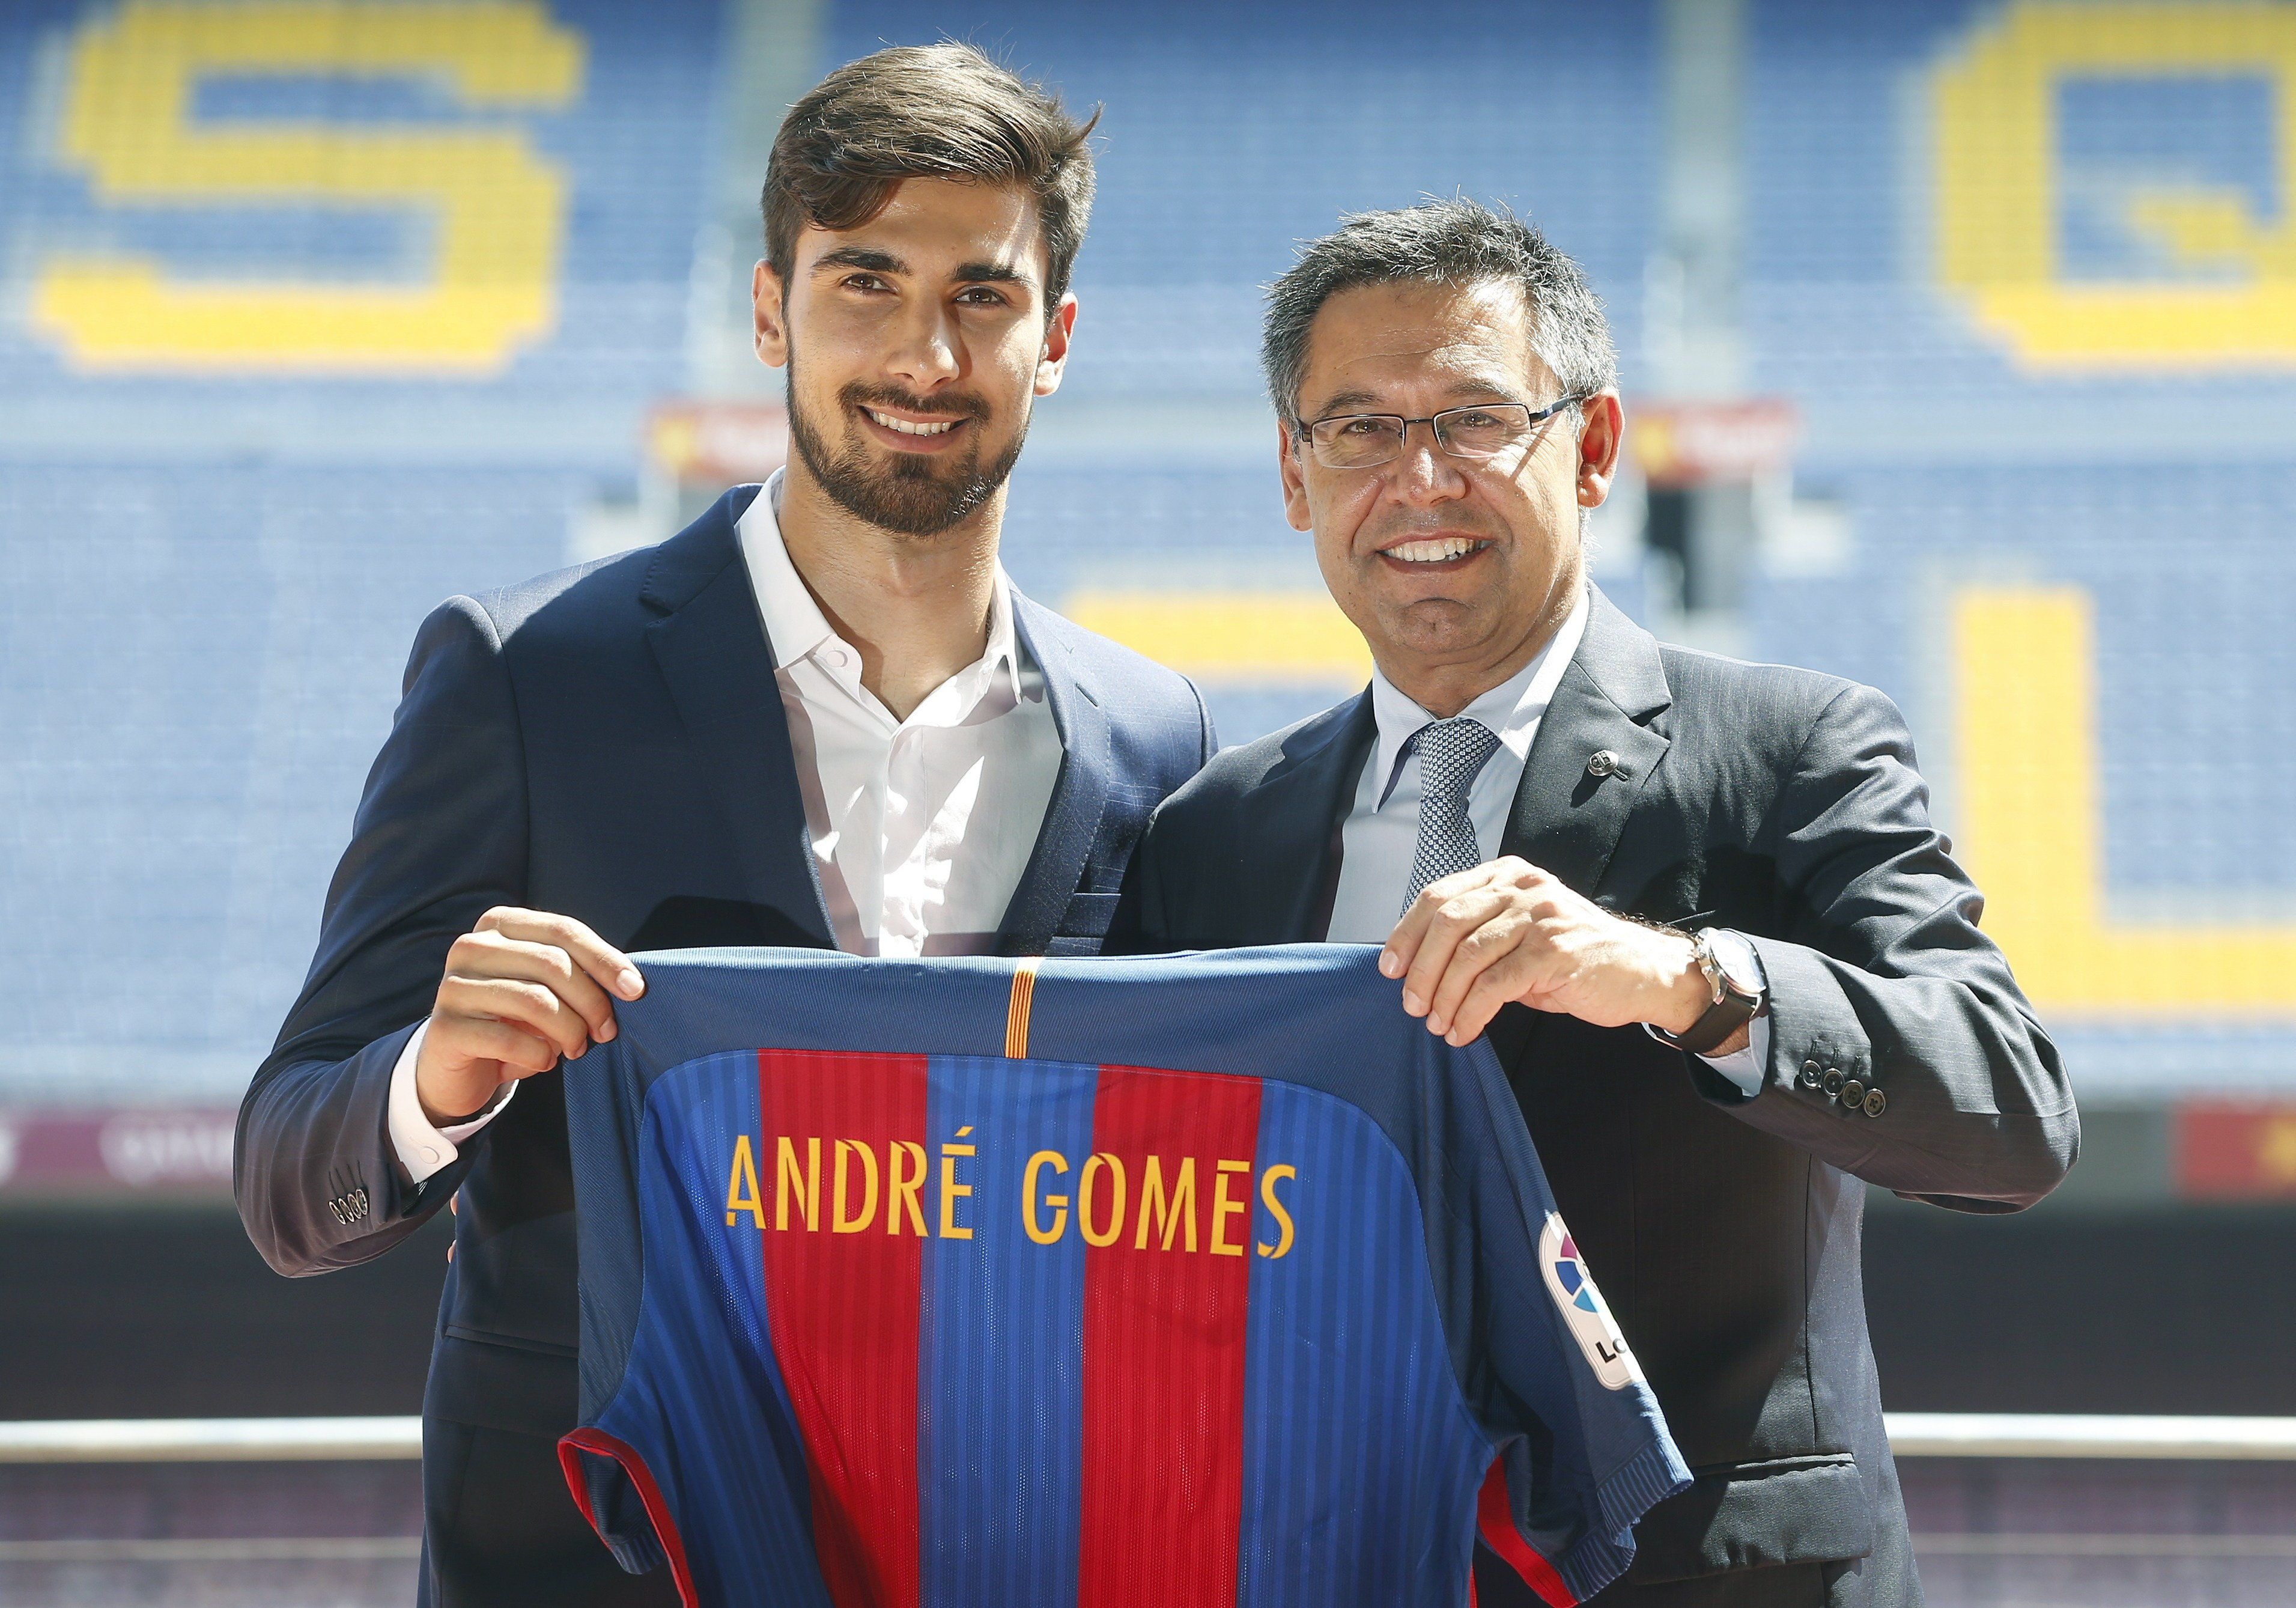 André Gomes: “He vingut al Barça perquè és el millor”